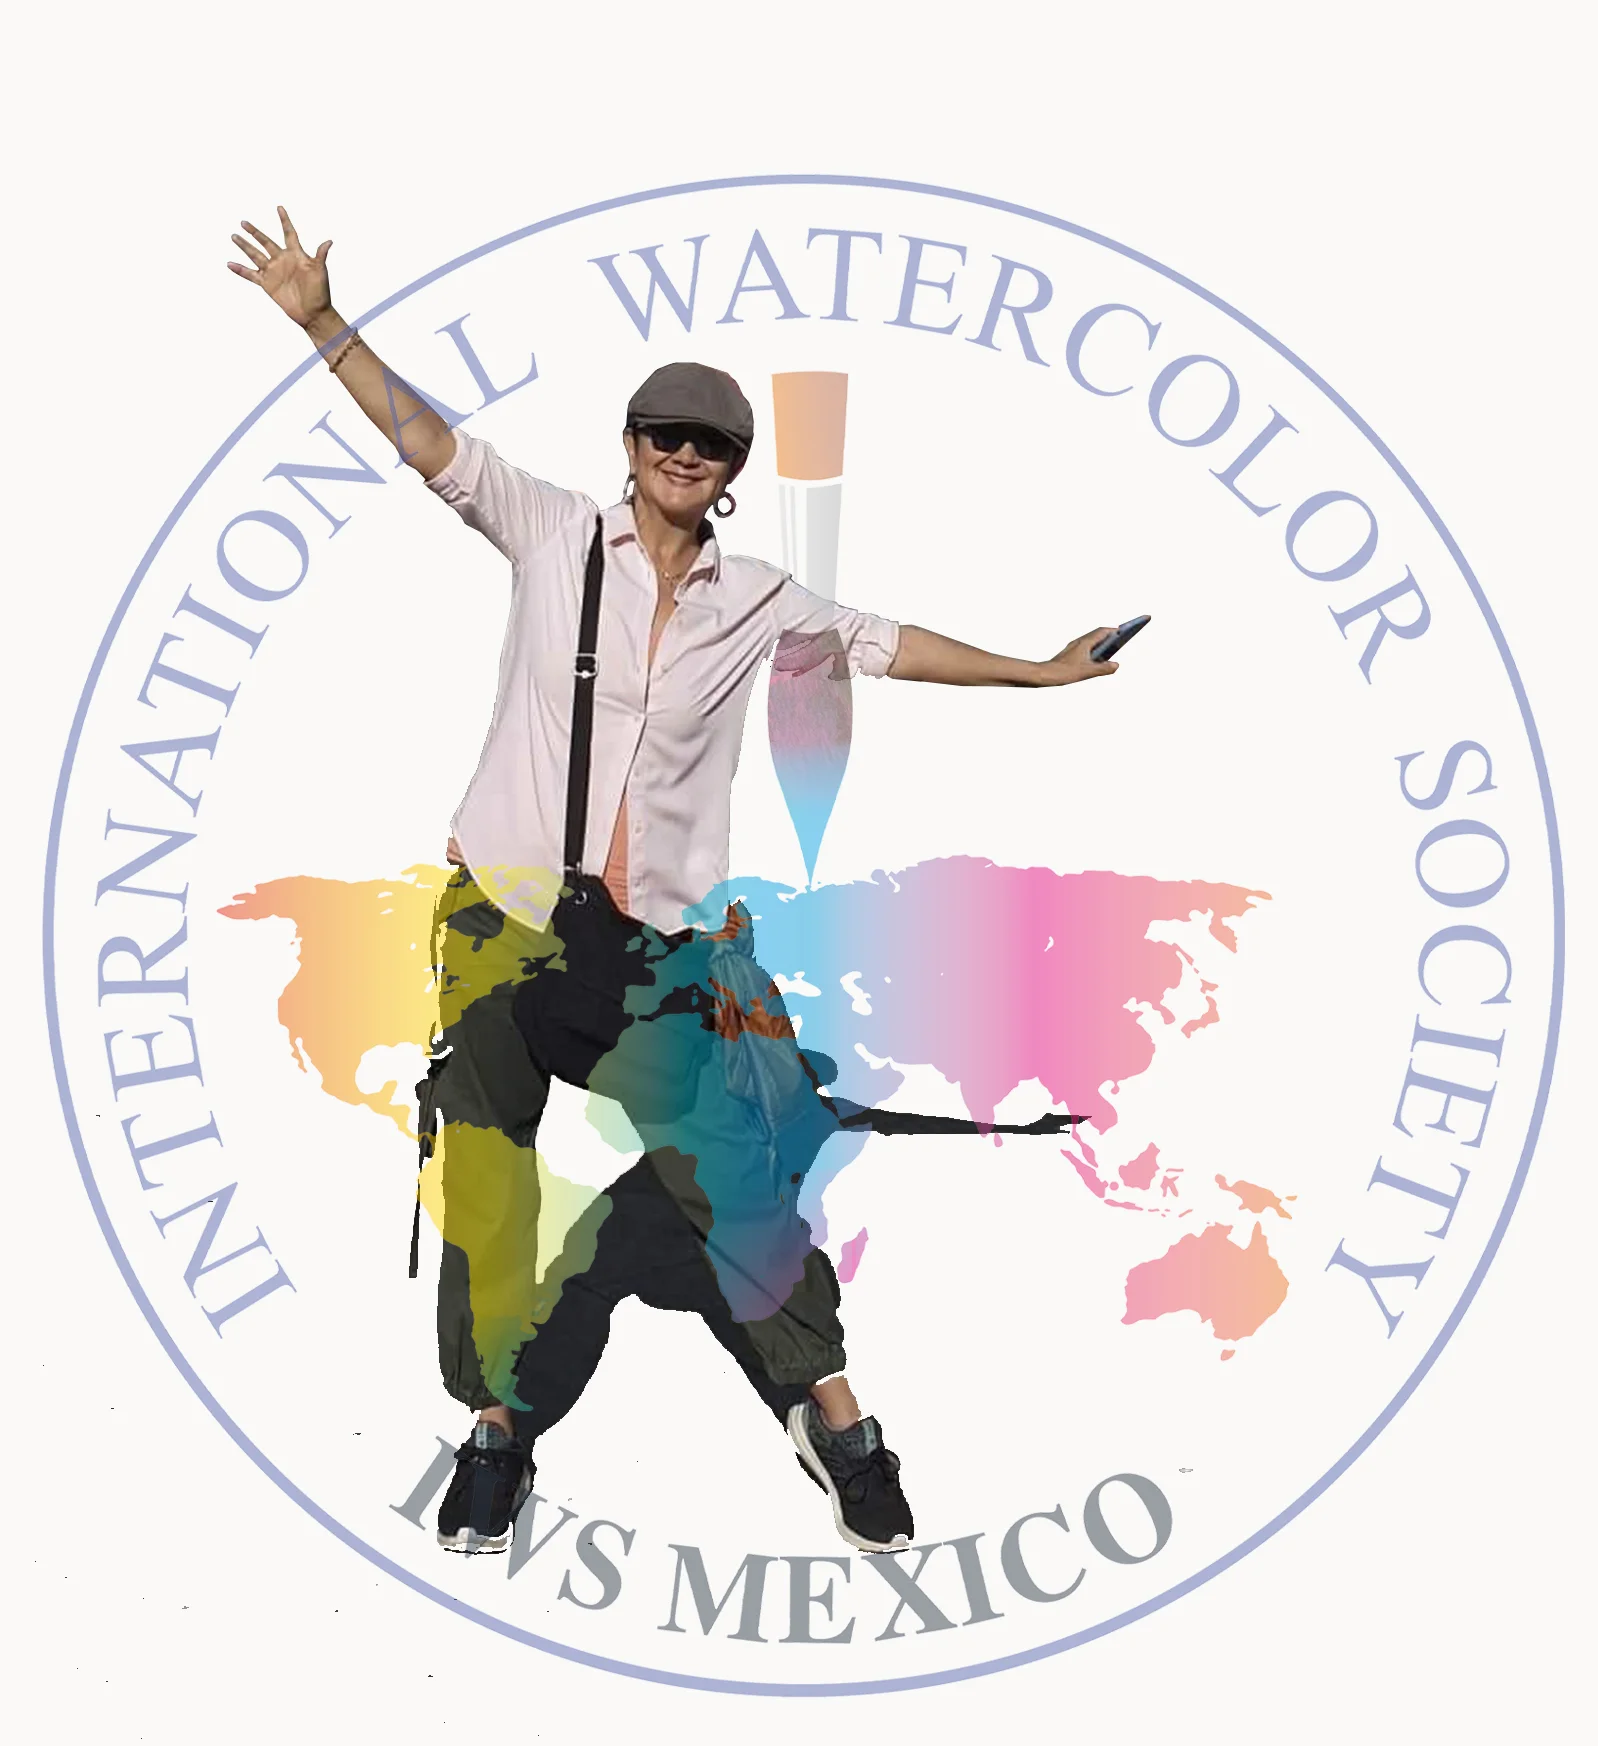 Lider de la IWS México